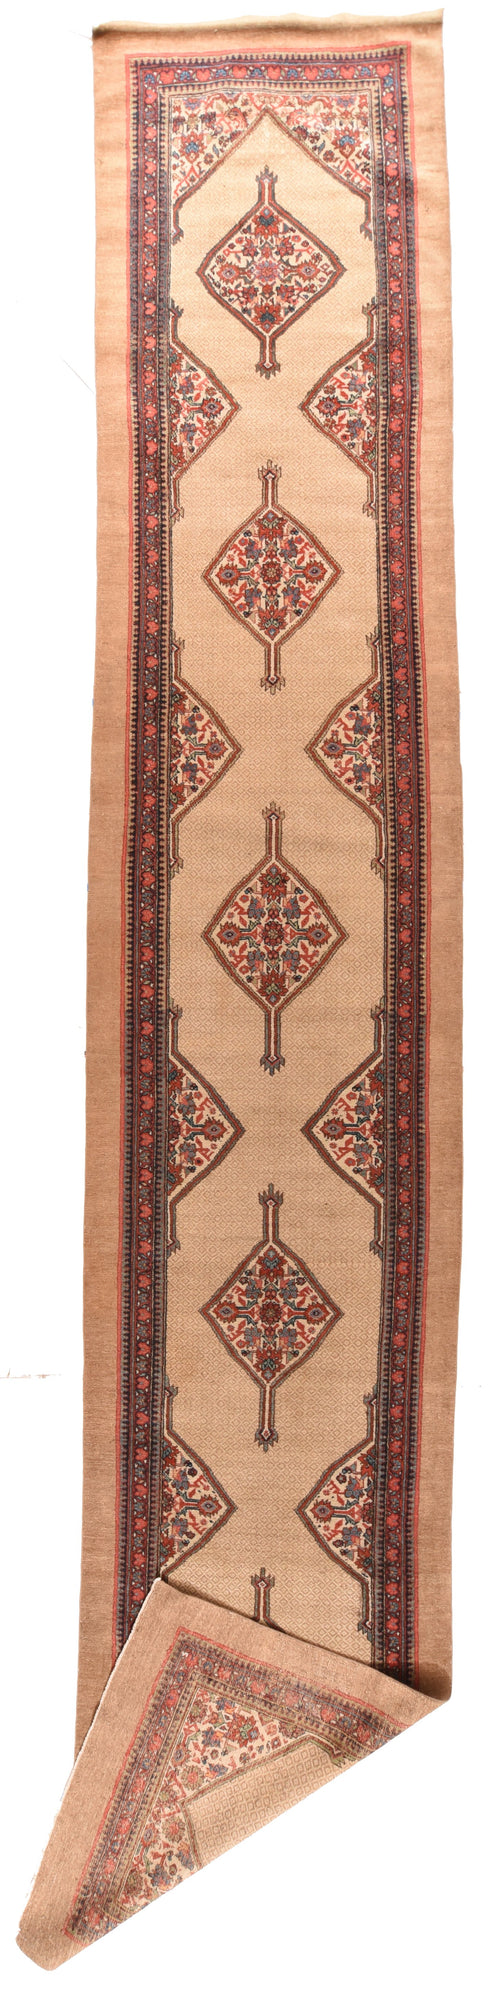 Antique Persian Sarab Area Rug